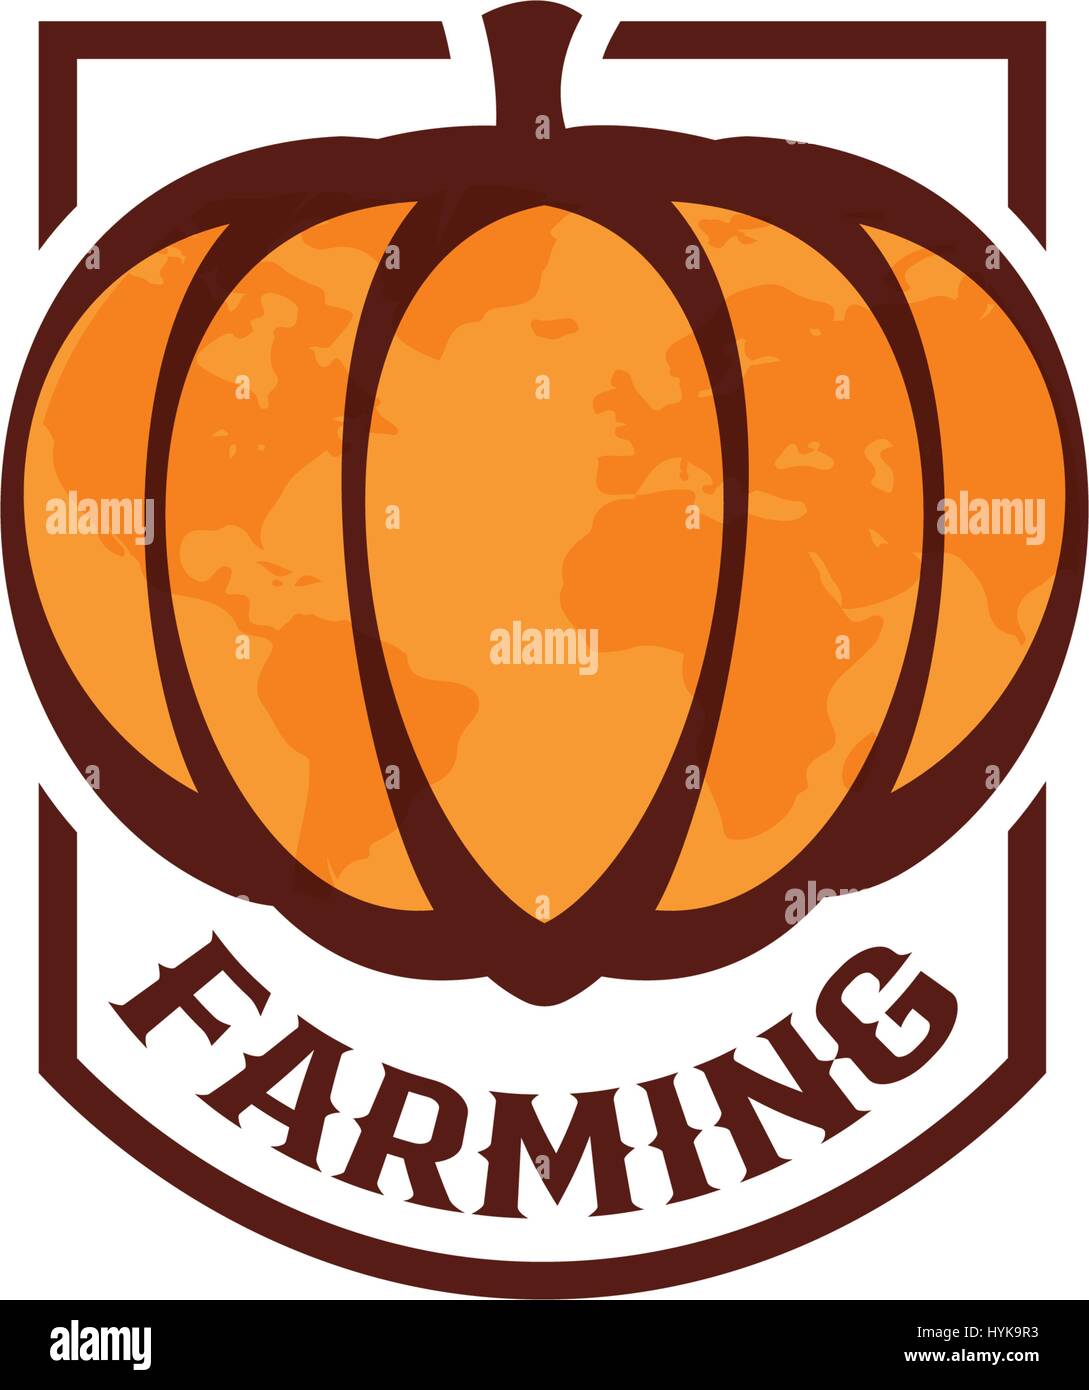 Abstract isolato di colore arancione forma rotonda zucca logo su sfondo bianco, logotipo allevamento,autunno vegetale illustrazione vettoriale Illustrazione Vettoriale